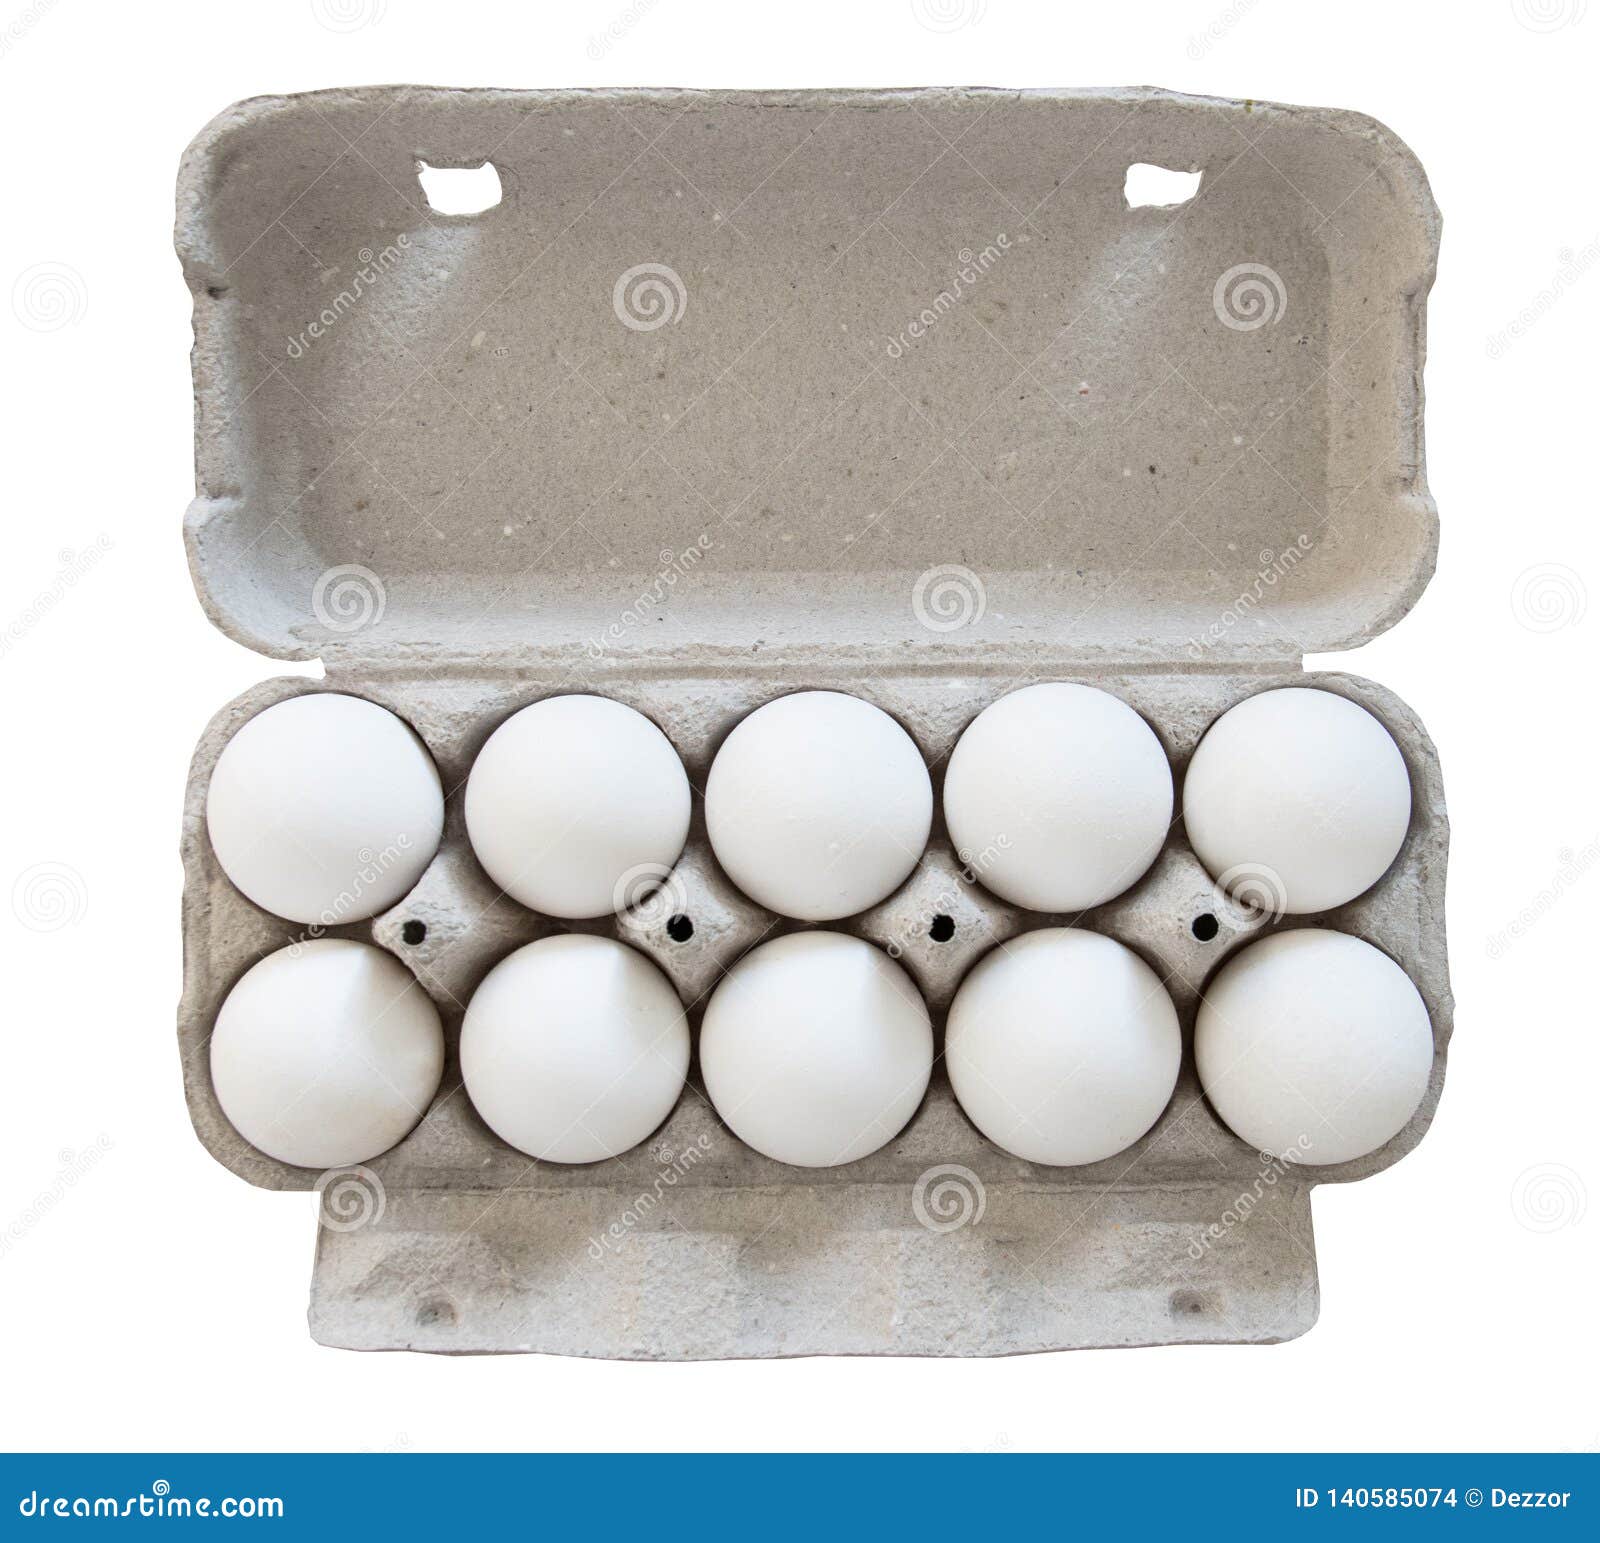 Playmobil Conjunto de alimentos de 3 idénticos cajas de 1/2 Doc huevos blanco con Pegatinas Opt 